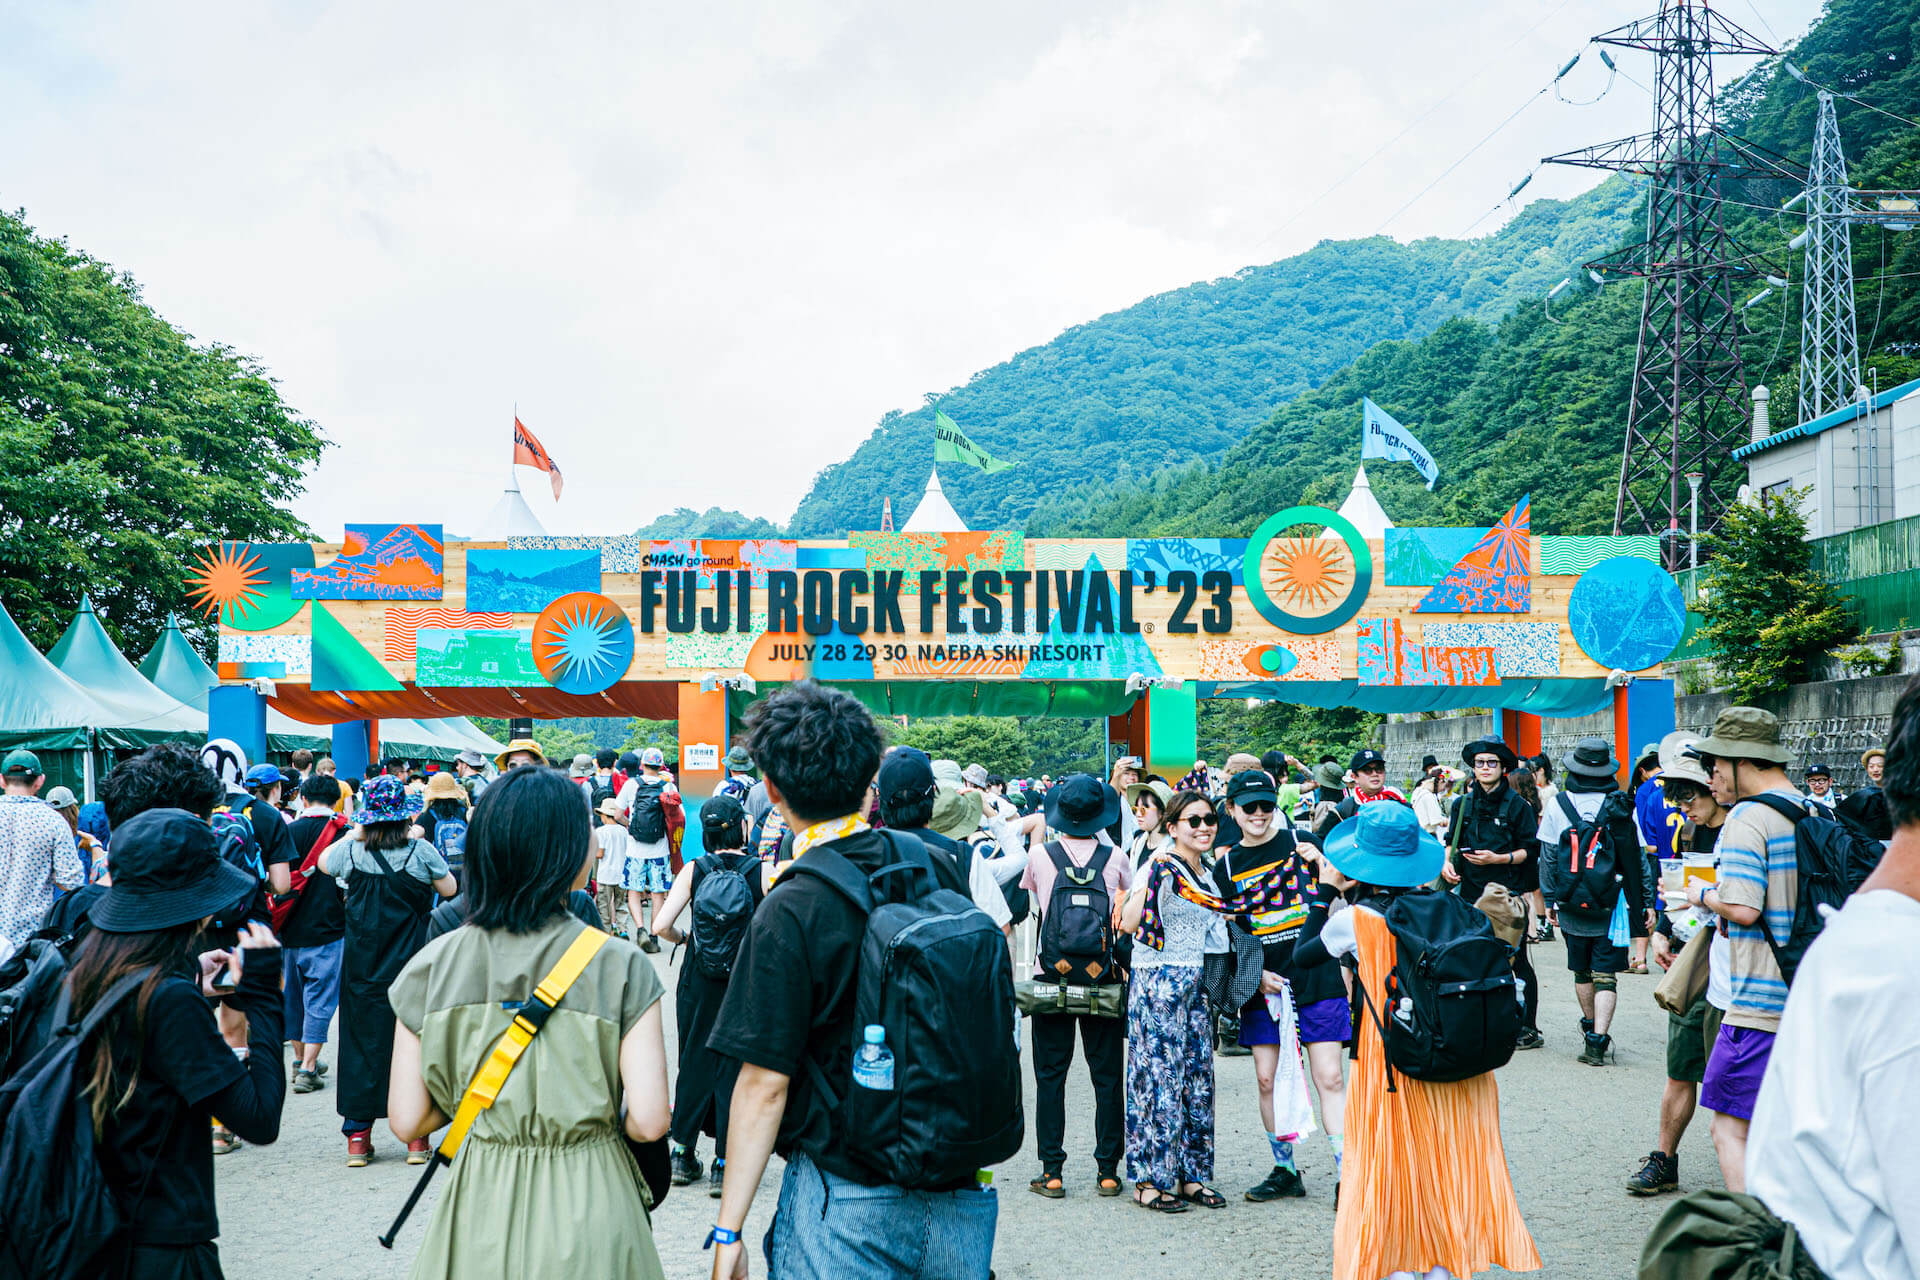 ついに帰ってきた眠らぬ苗場の冒険──＜FUJI ROCK FESTIVAL '23＞総括レポート music230807-fujirockfestival2023-4